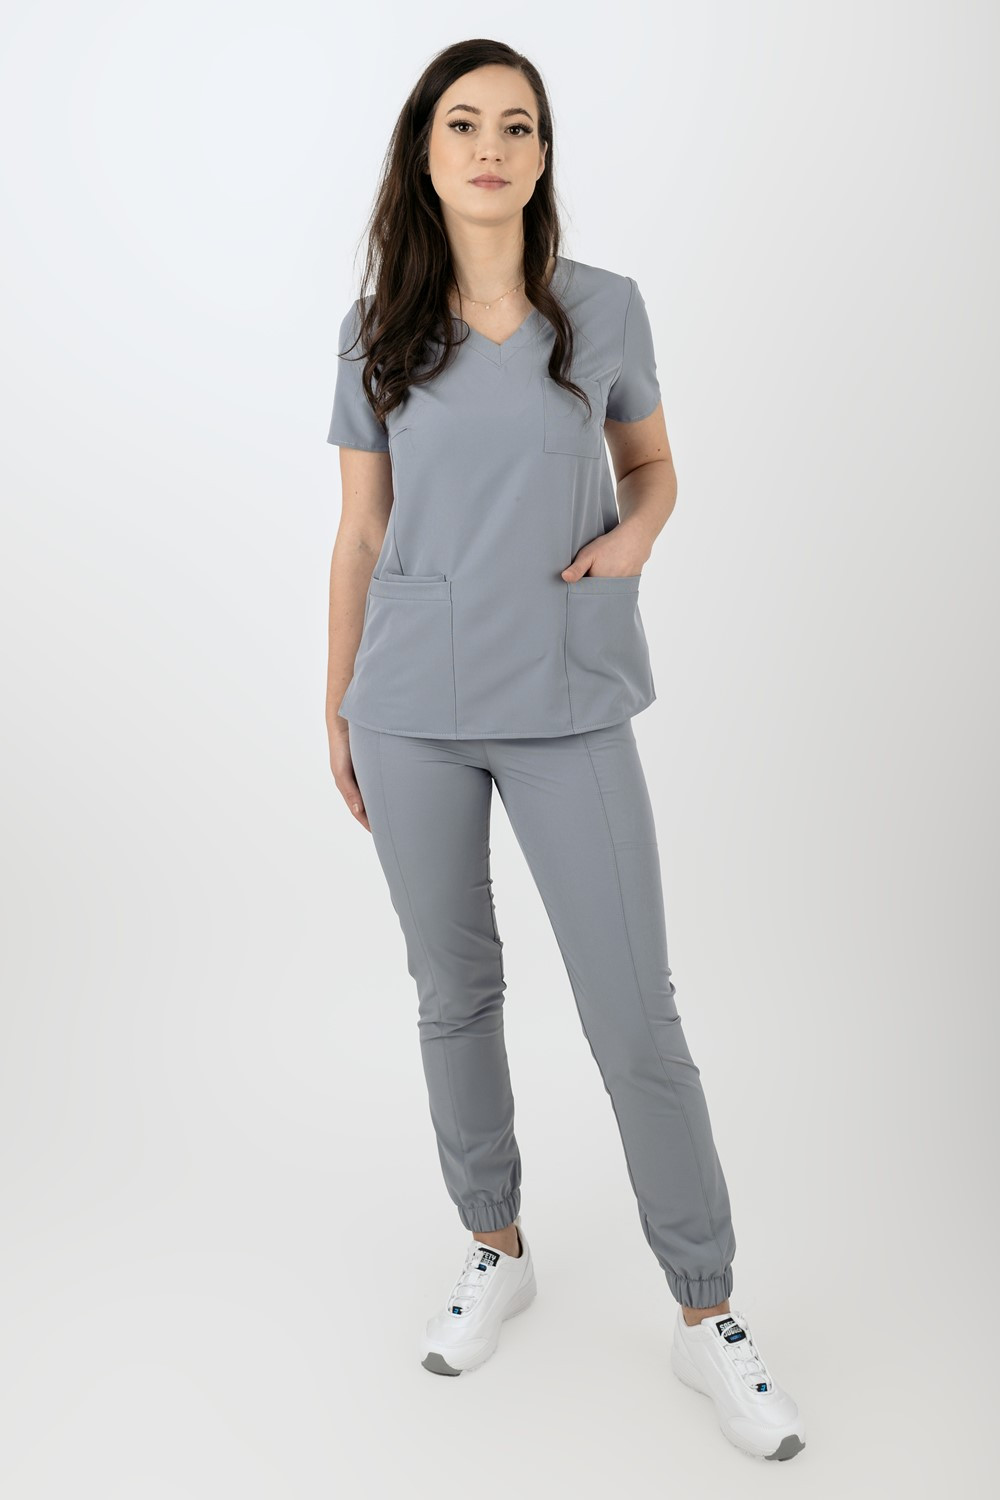 Elastyczny komplet medyczny scrubs bluza medyczna damska joggery medyczne popiel